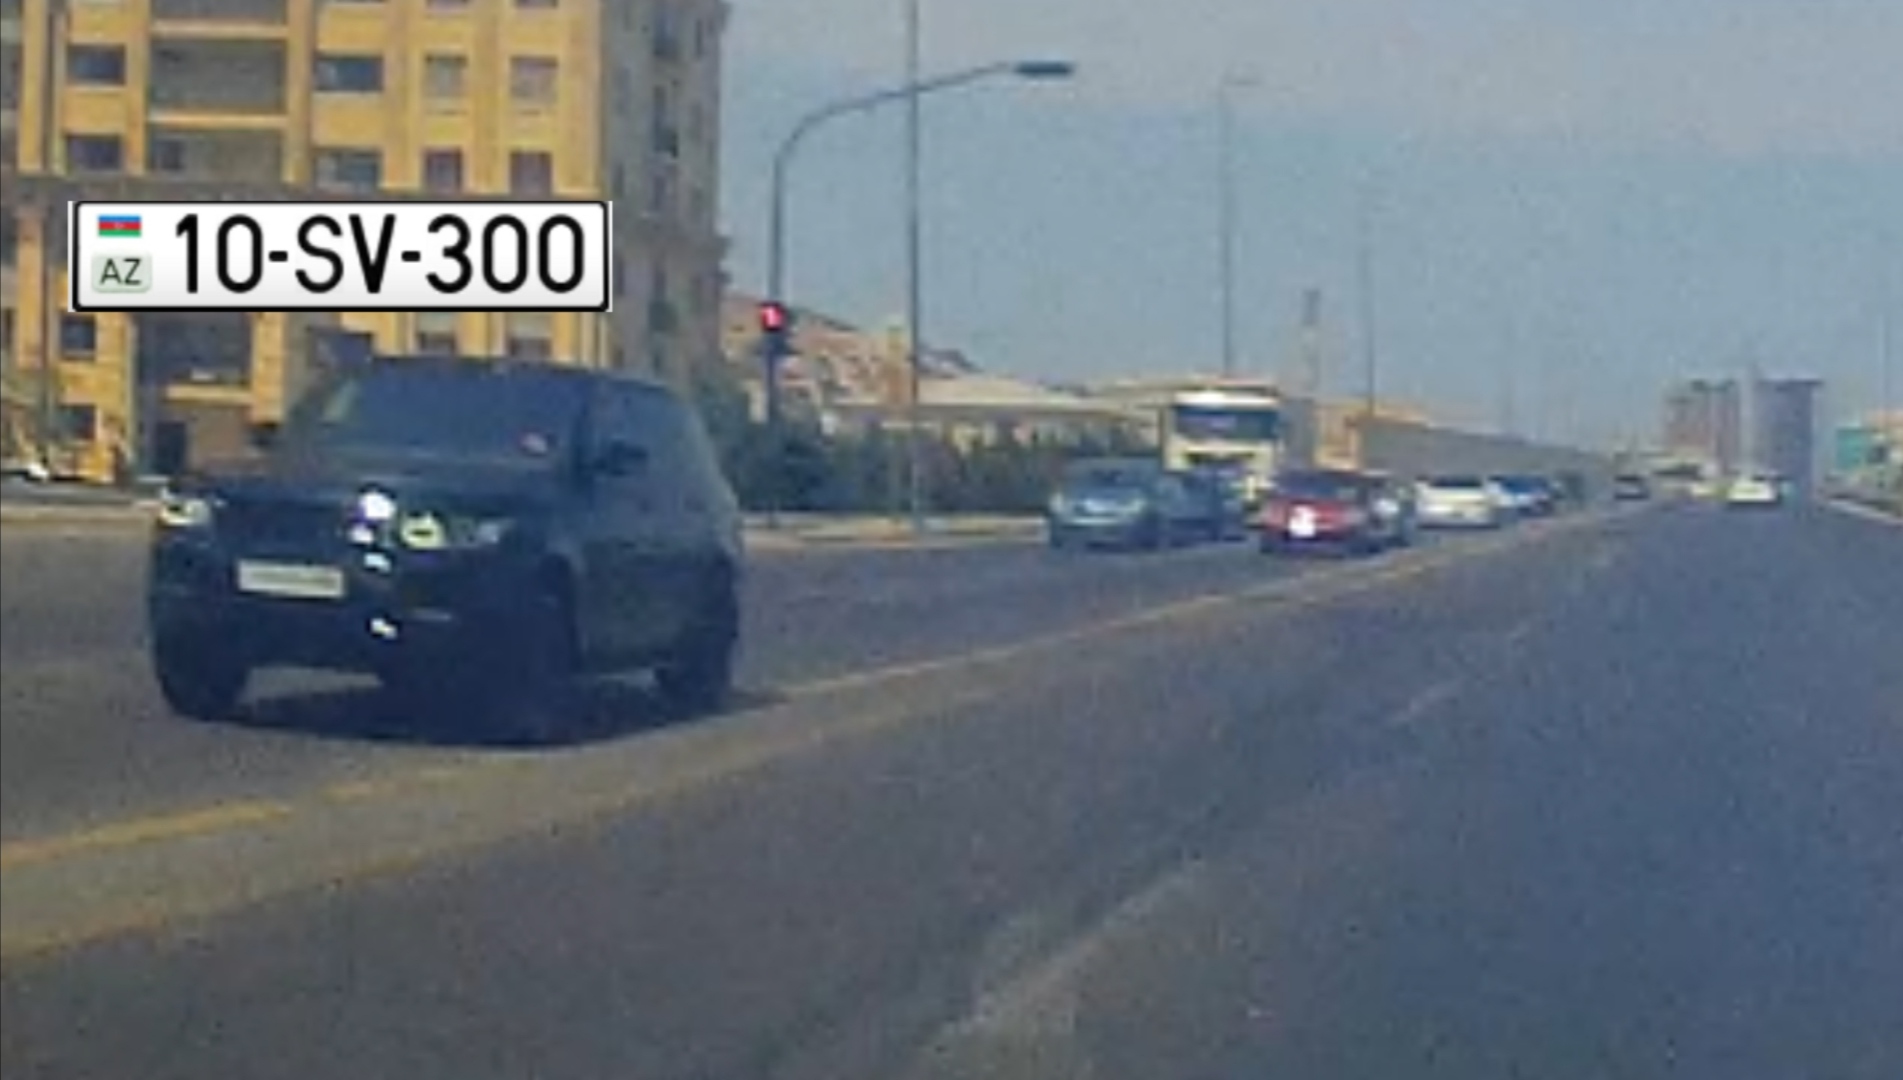 Polis sürücü 150 minlik maşınla əks yola çıxıb qırmızıda keçdi - 10-SV-300  - VİDEO